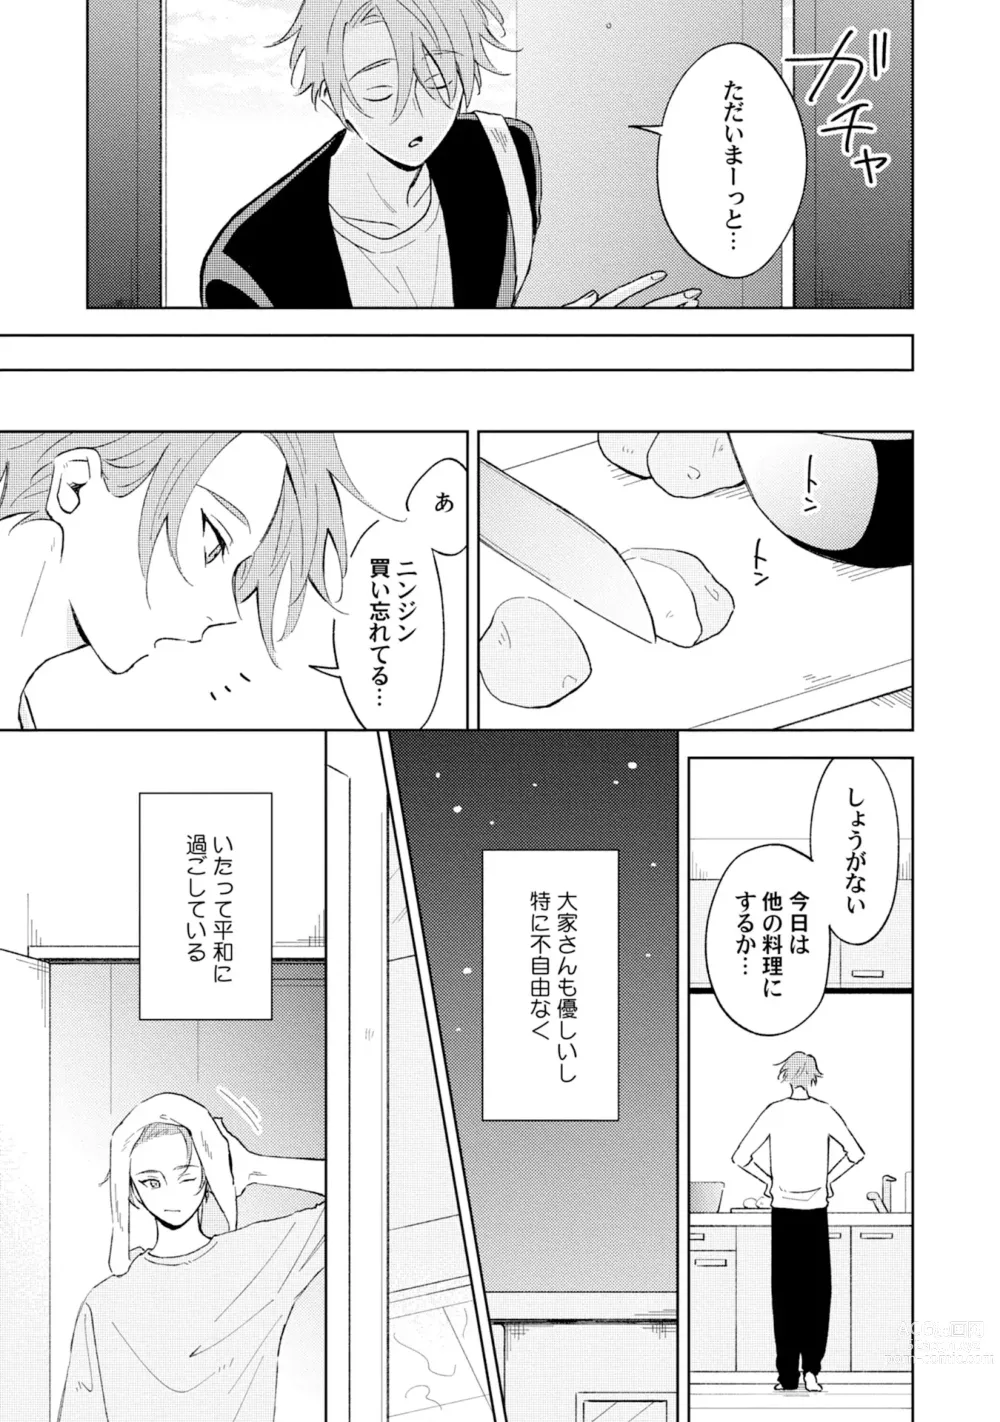 Page 5 of manga Toho 3-byou no Trouble Love Room 1